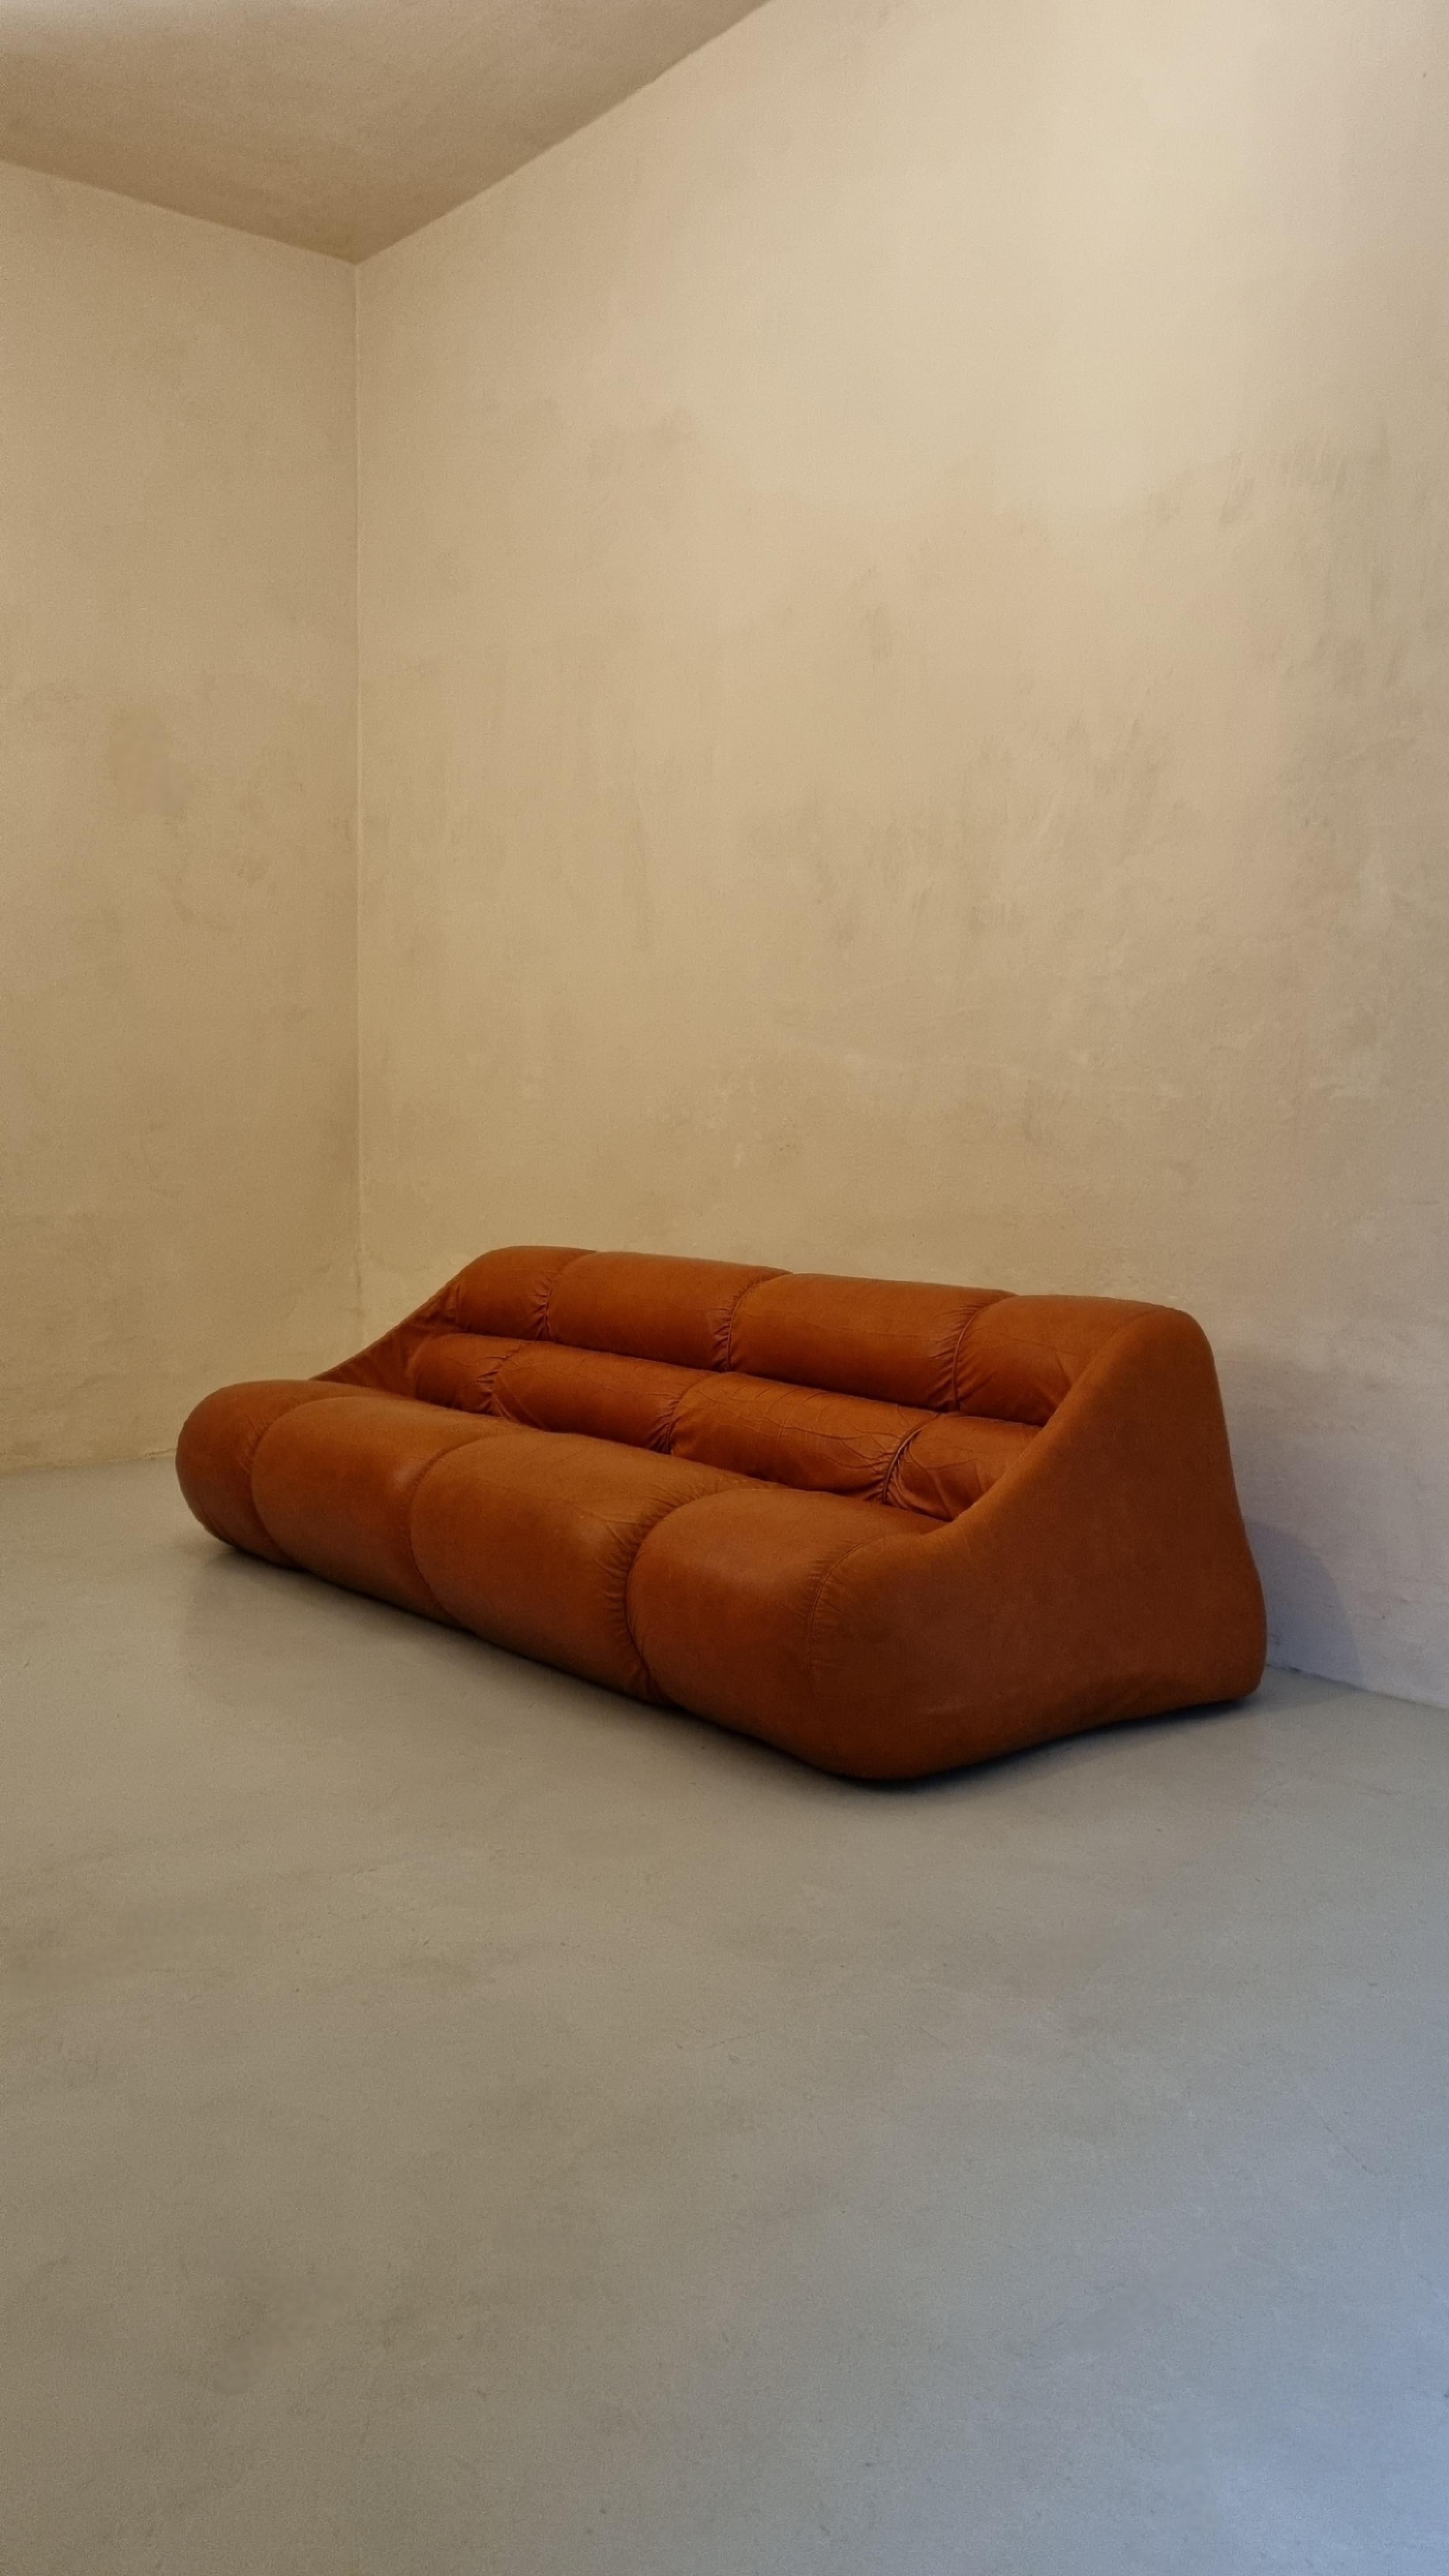 Canapé 3 places Ciuingam conçu par le trio de designers De Pas D' Urbino & Lomazzi pour BBB Bonacina en 1967.
Rembourrage en mousse de caoutchouc, cuir d'origine, plastique.
Bon état, la peau est légèrement usée au niveau de l'assise.
Jonathan De